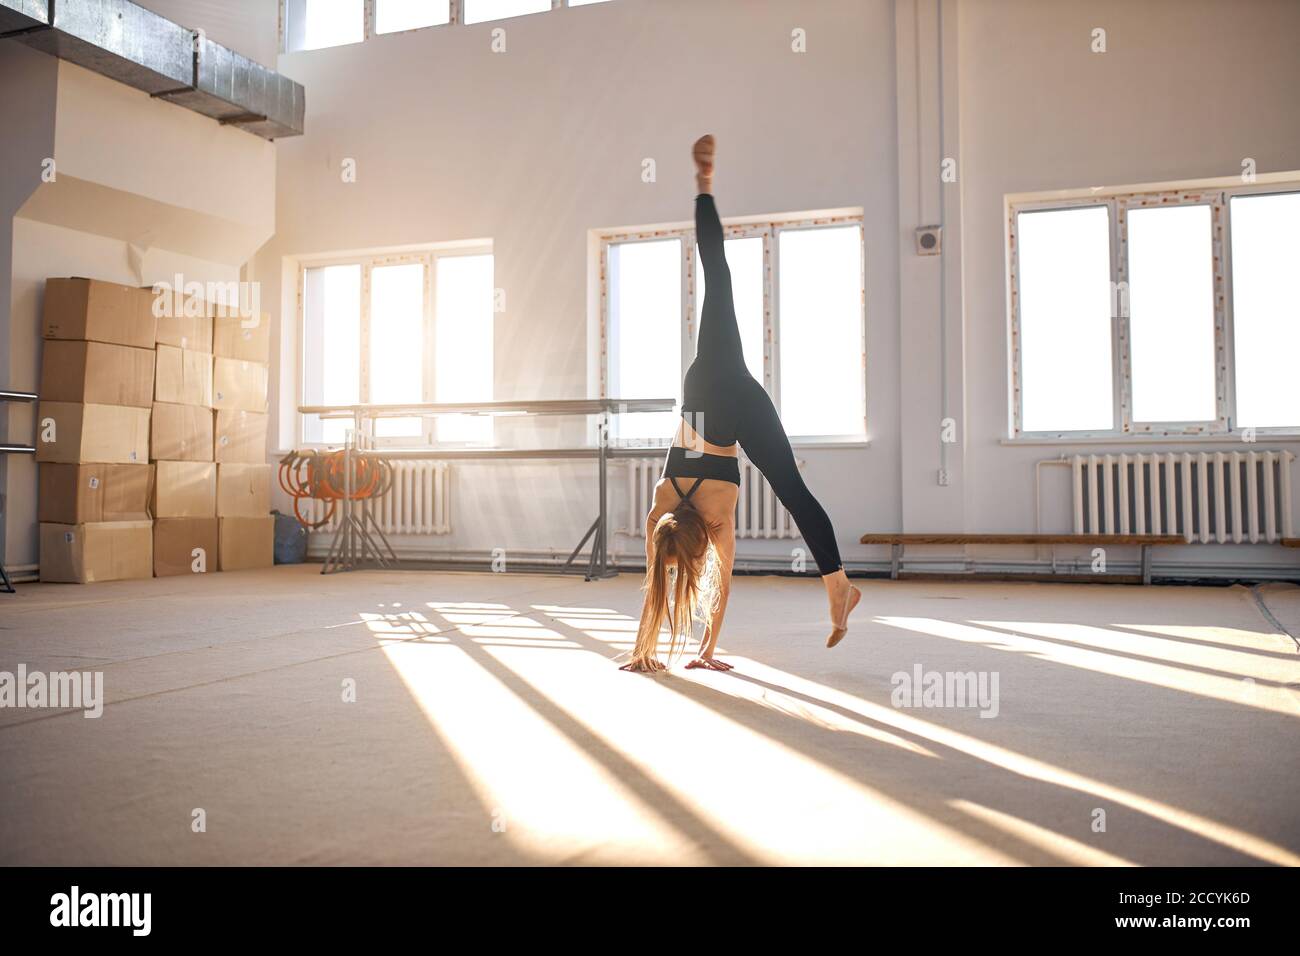 Junge gut geformte Frau Performing Art Gymnastik Element, so dass Handstand in der Gymnastikschule, Spaltsprung in der Luft, Sport und Erfolg conce Stockfoto